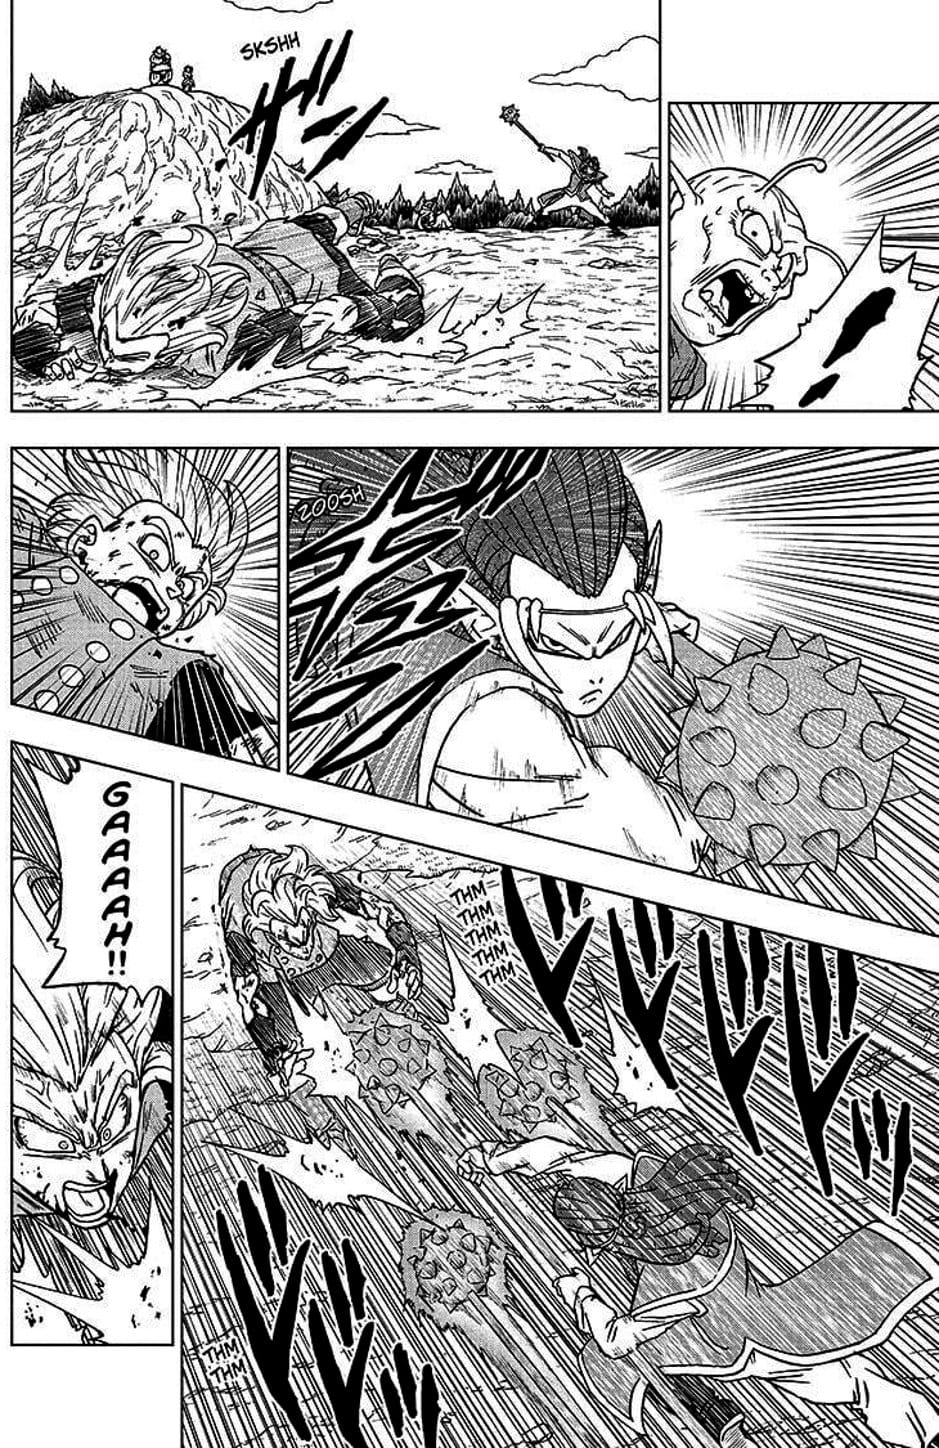 Truyện Tranh Truy Tìm Ngọc Rồng Siêu Cấp - Dragon Ball Super trang 3134